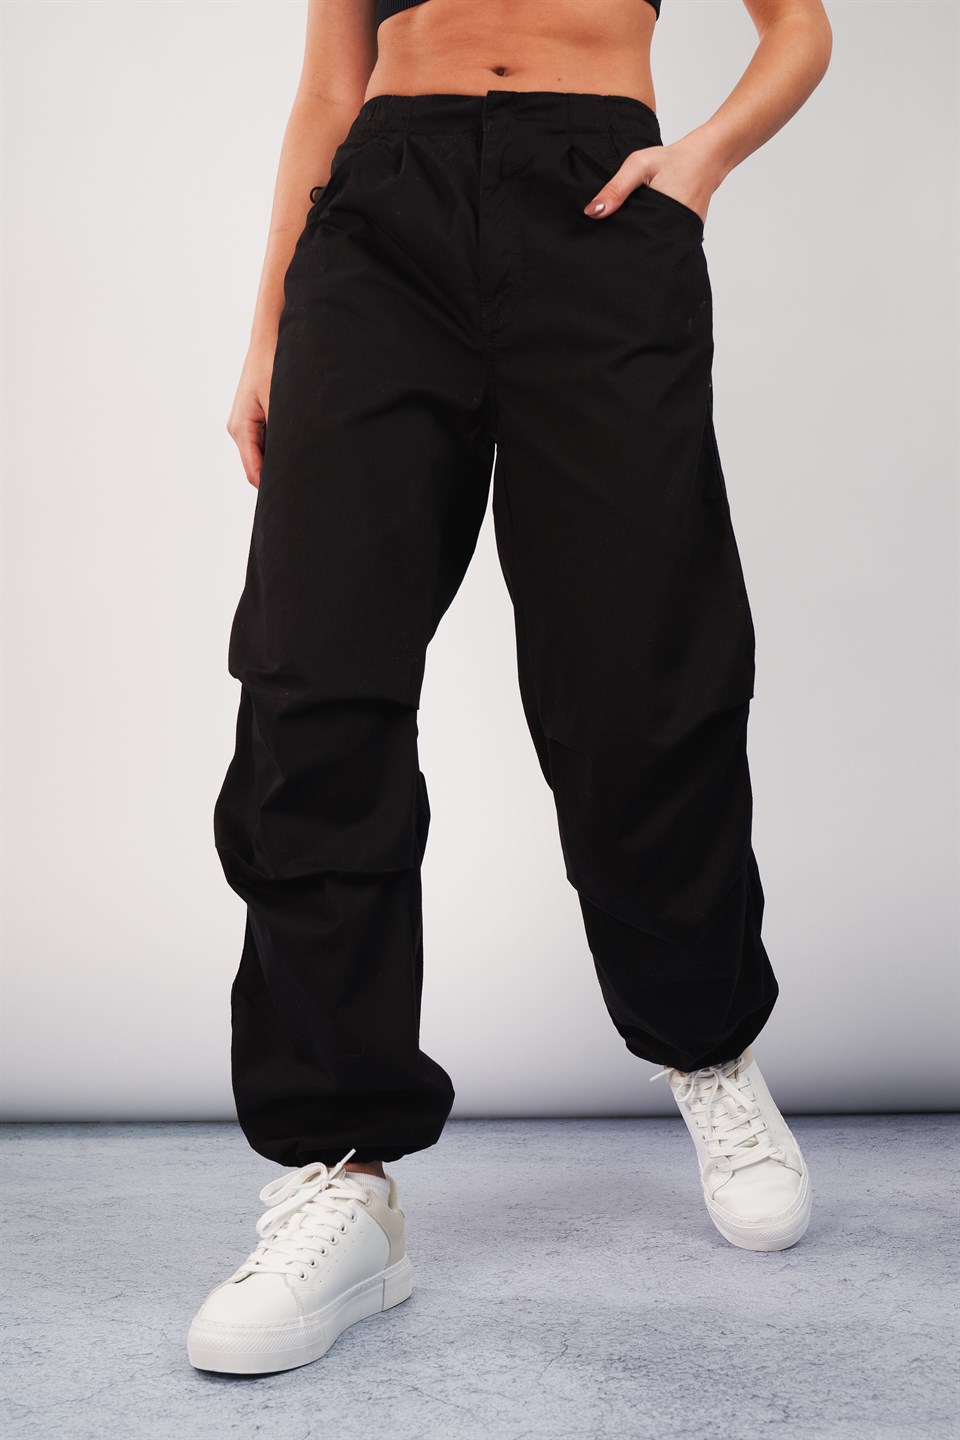 Kadın Pantolon Modelleri - Ambar Giyim